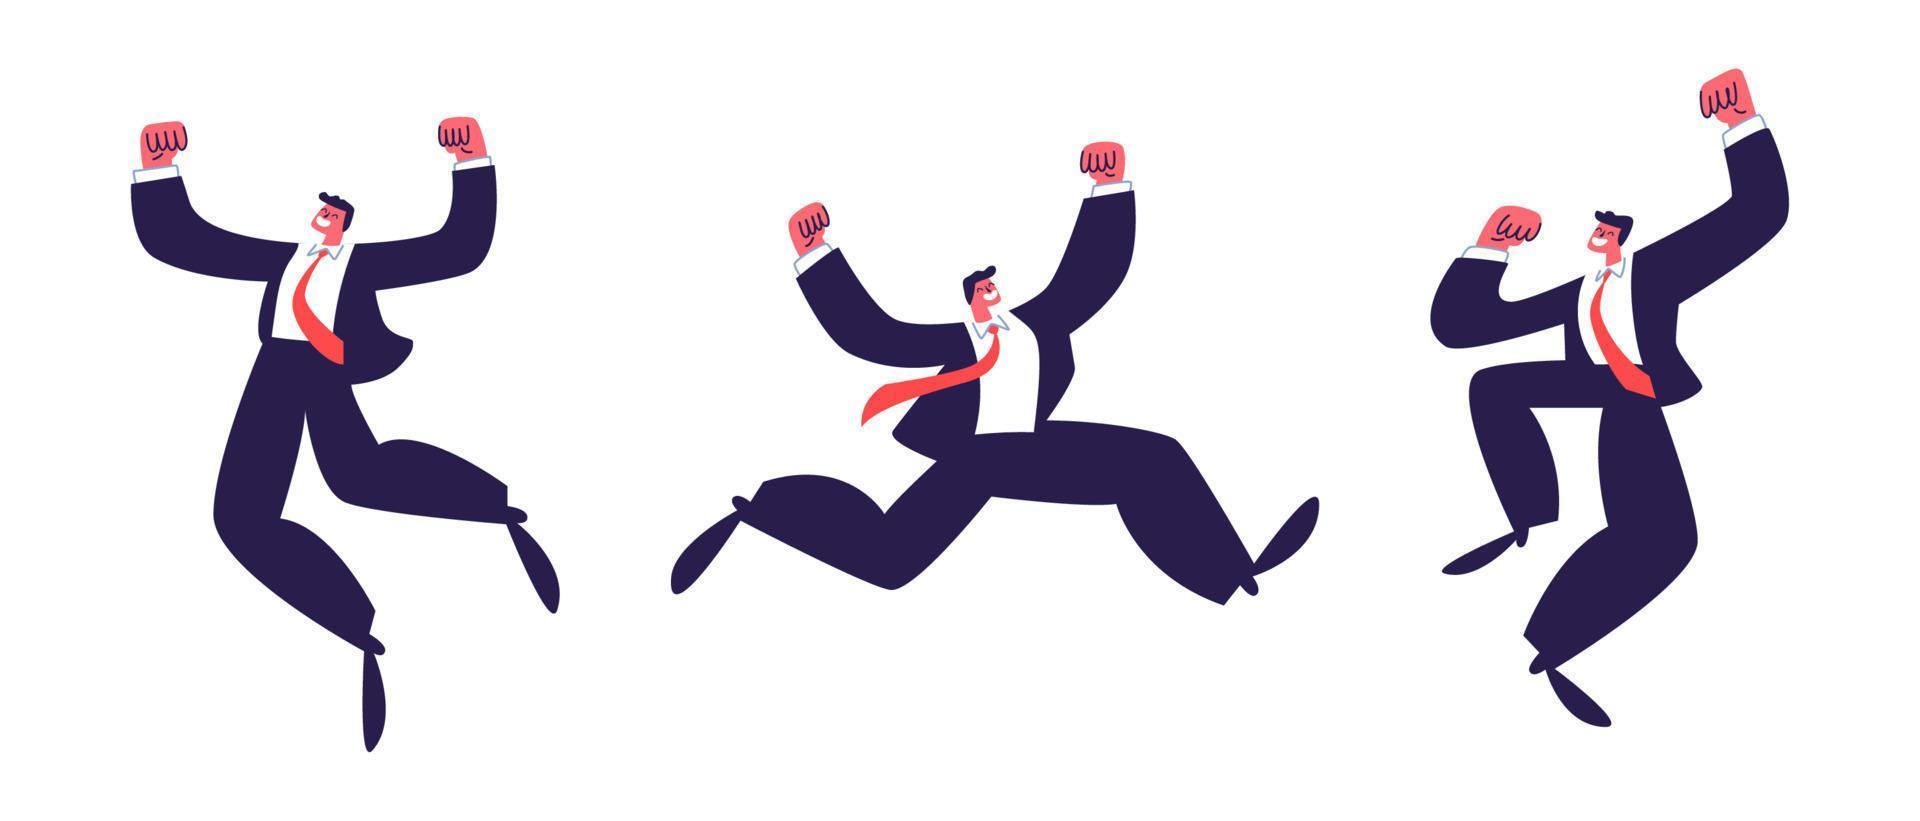 gente feliz saltando. un grupo de oficinistas con traje y corbata roja saltando alegremente y agitando los brazos y las piernas. ilustración de stock vectorial aislada sobre fondo blanco. vector